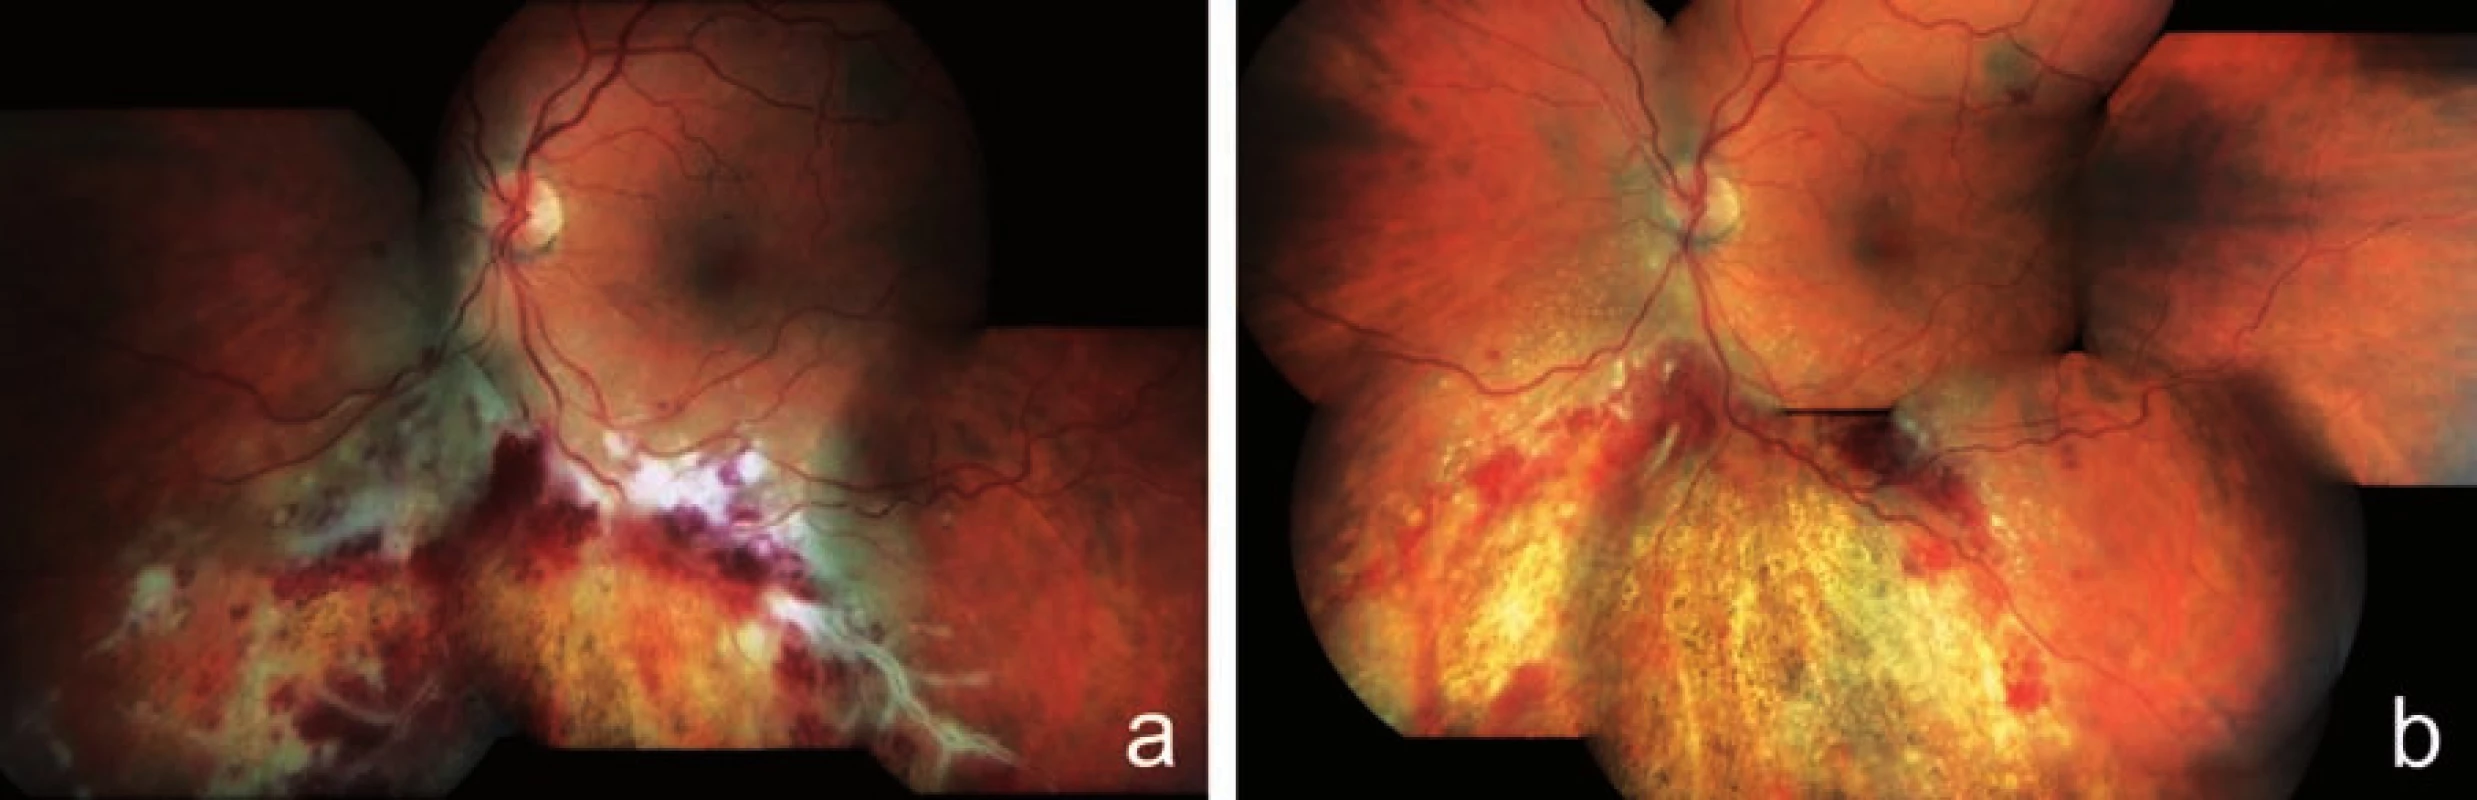 Klinický nález u pacienta z kazuistiky 1. Obraz fulminantní formy CMV retinitidy typu „kečup a sýr“ a perivaskulární infiltráty typu „omrzlých větví“ u 32letého pacienta po alogenní transplantaci kmenových krvetvorných buněk pro akutní myeloidní leukémii a), regrese nálezu na fundu postiženého oka po 8 týdnech terapie gancyklovir i.v. (Cymevene) s resorpcí retinálních hemoragií a jizvením (atrofizací) sítnice s hrubými přesuny pigmentu b)